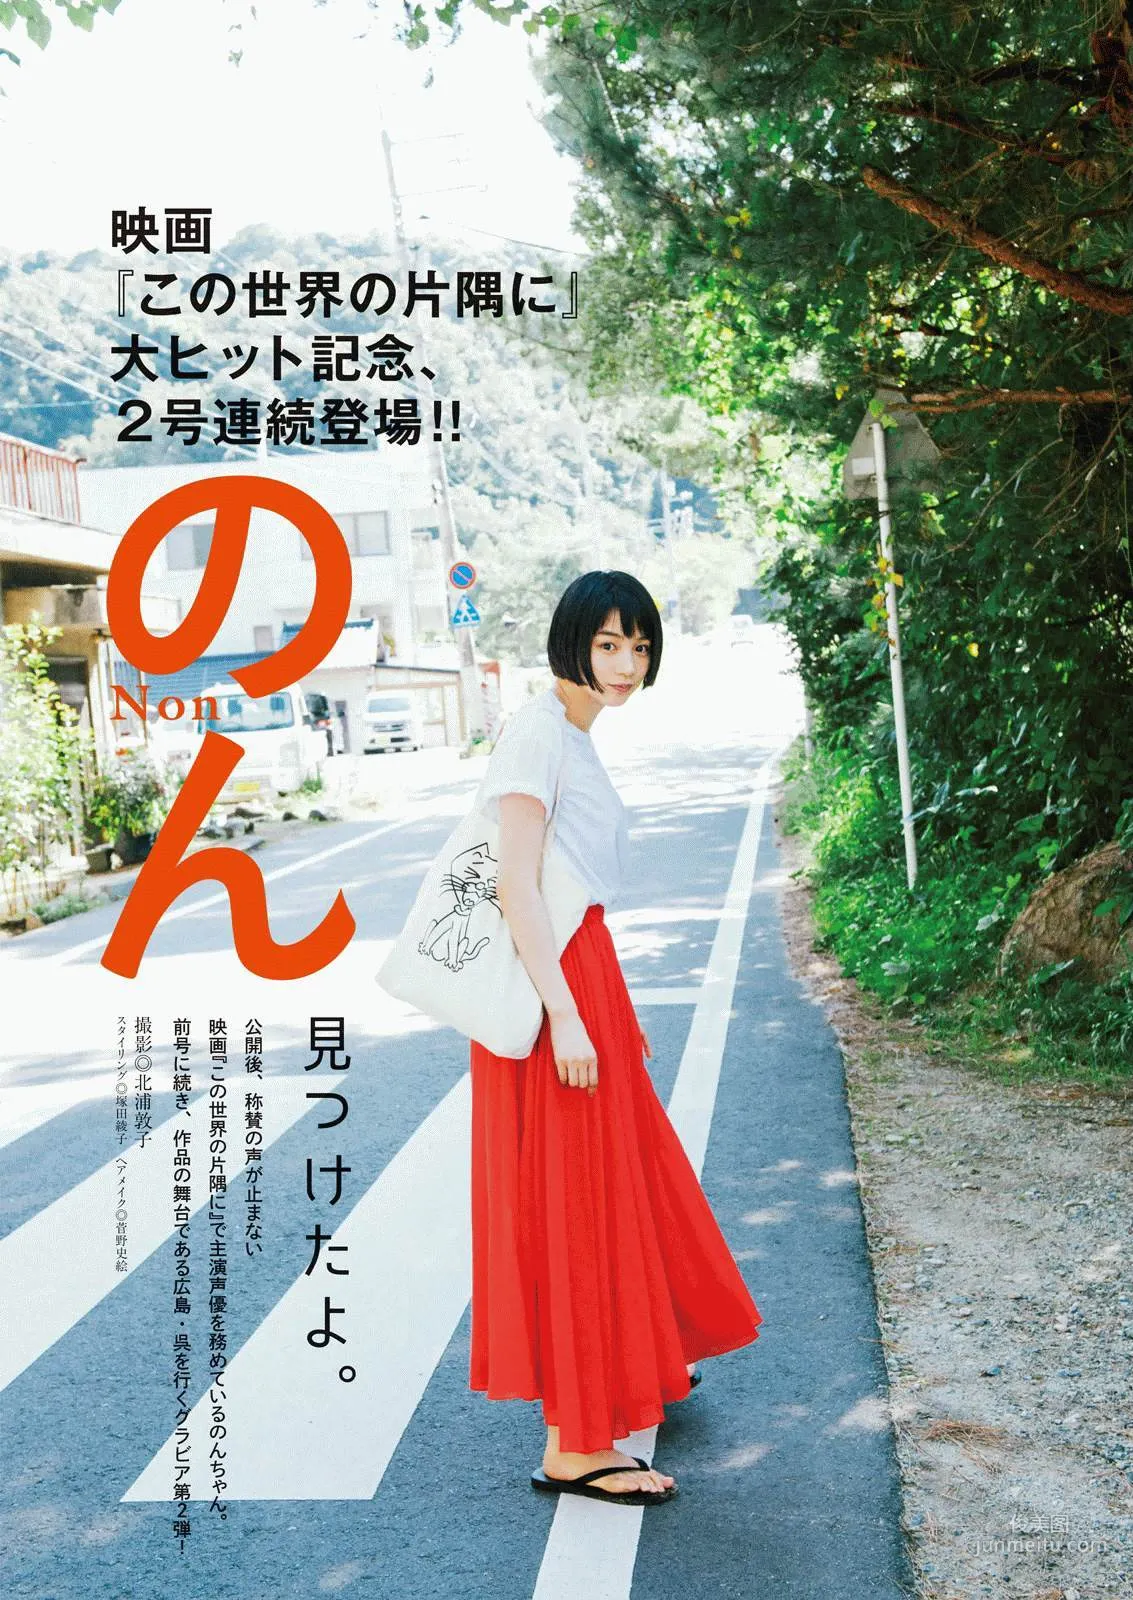 [Manga Action] 北野日奈子 のん 2016年No.24 写真杂志9